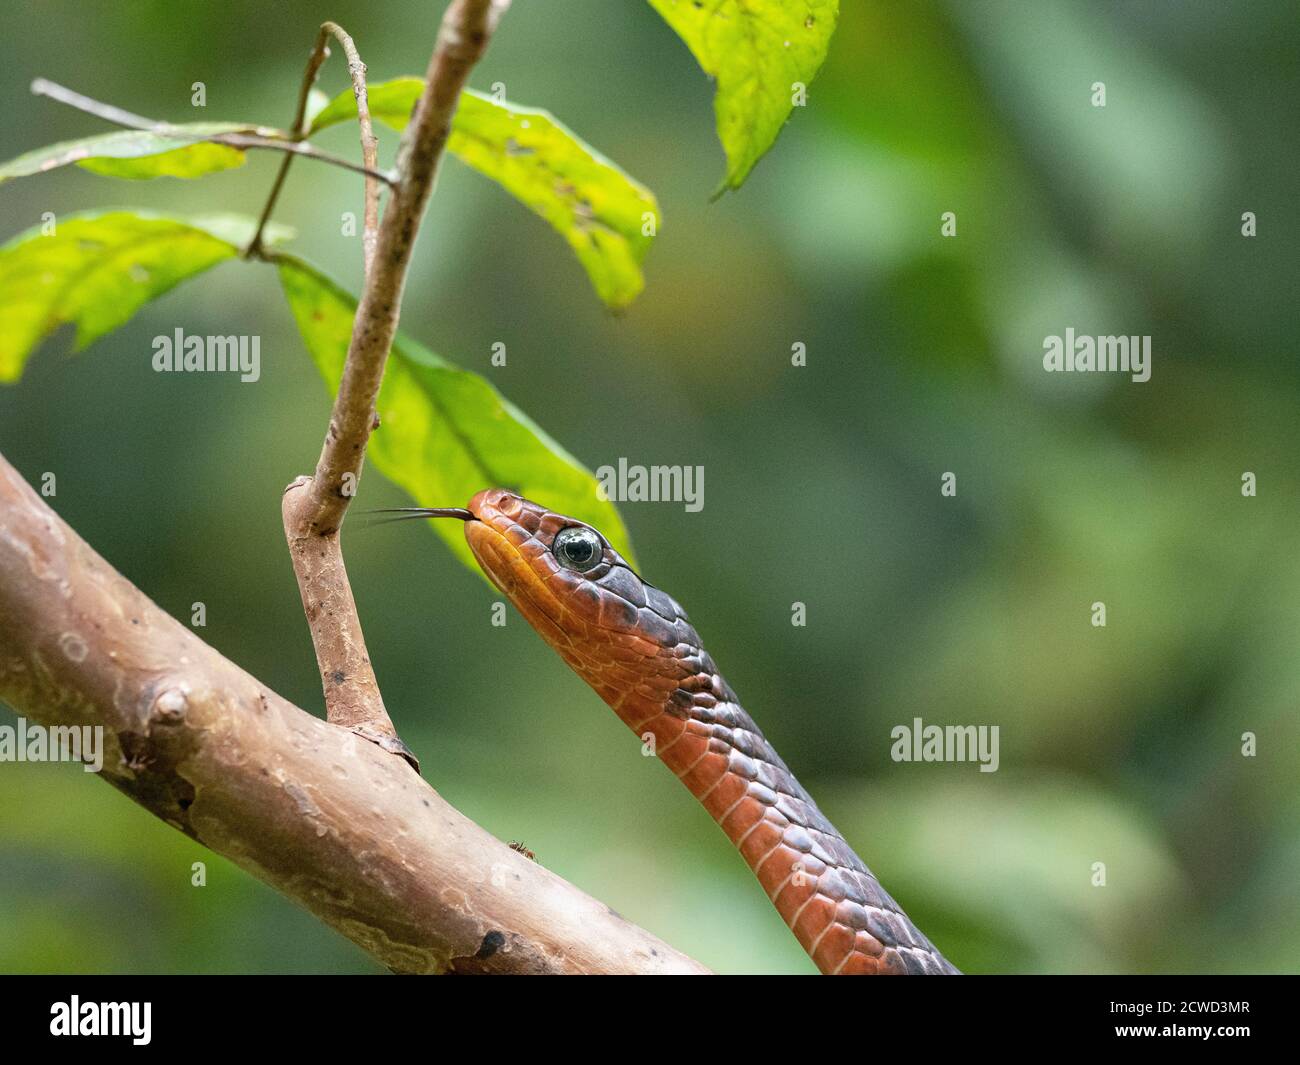 Una serpiente de espino oxidada adulta, Chironius scurrulus, escondido en el follaje, Iricahua Caño, Cuenca Amazónica, Loreto, Perú. Foto de stock